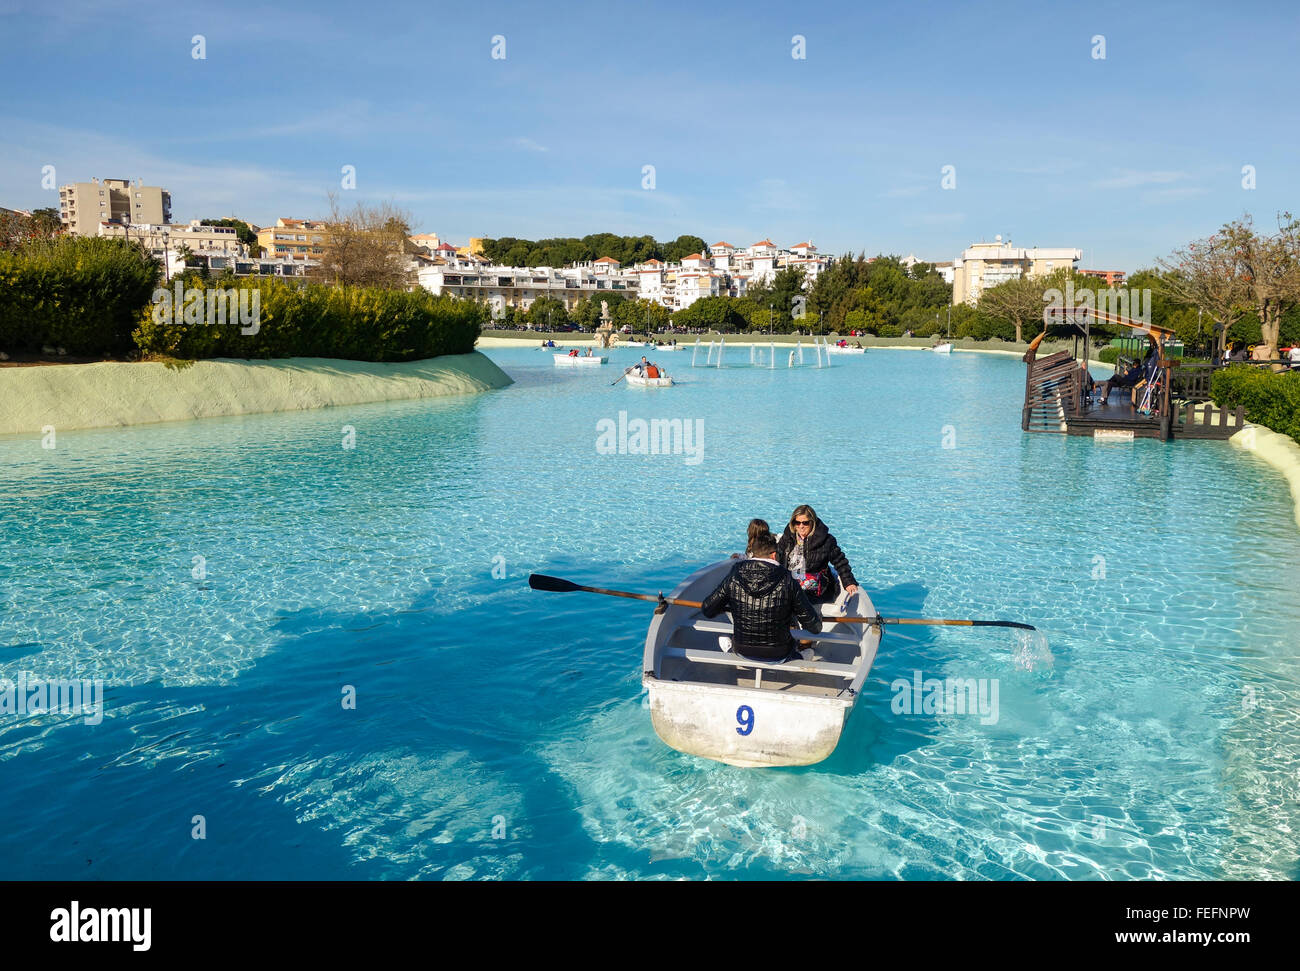 La nautica Stagno, lago artificiale a La Bateria atraction parco pubblico di Torremolinos. Costa del Sol, Spagna Foto Stock